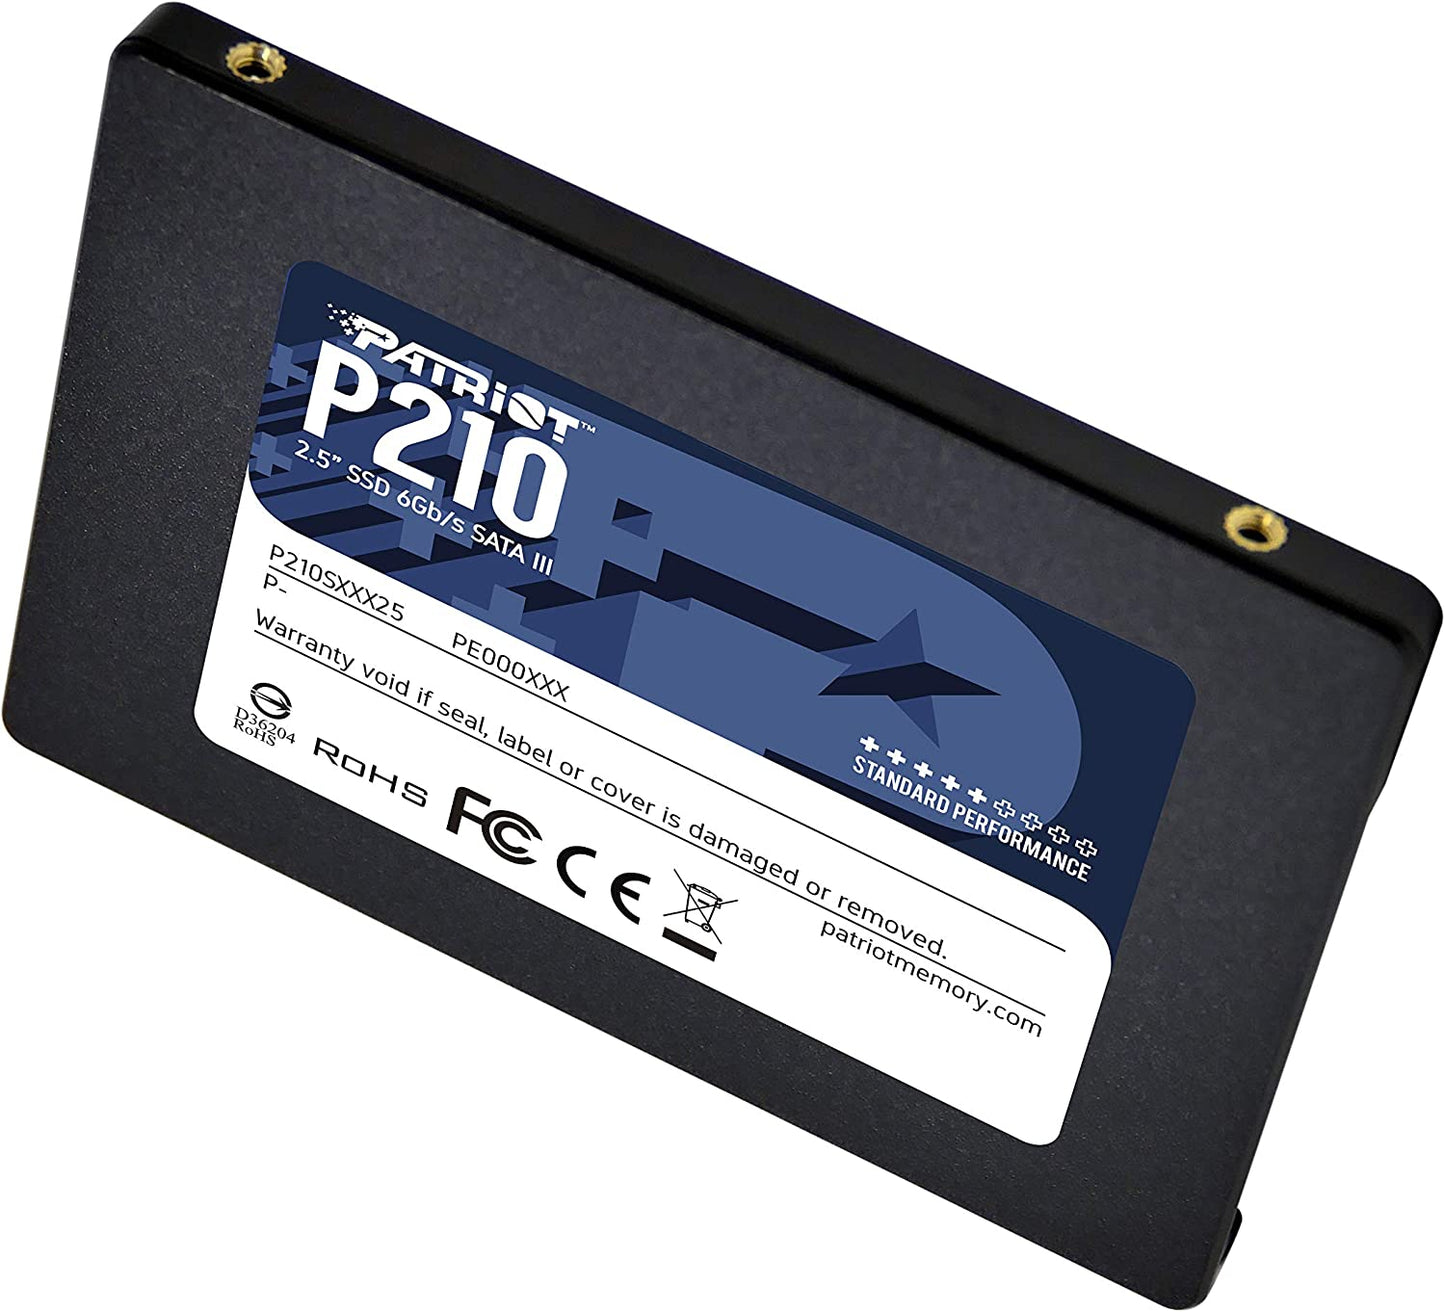 El Patriot SSD P210 256GB SATA3 2.5 es un disco de estado sólido (SSD) de 256 GB de capacidad y con una interfaz SATA3 de 2.5 pulgadas. 